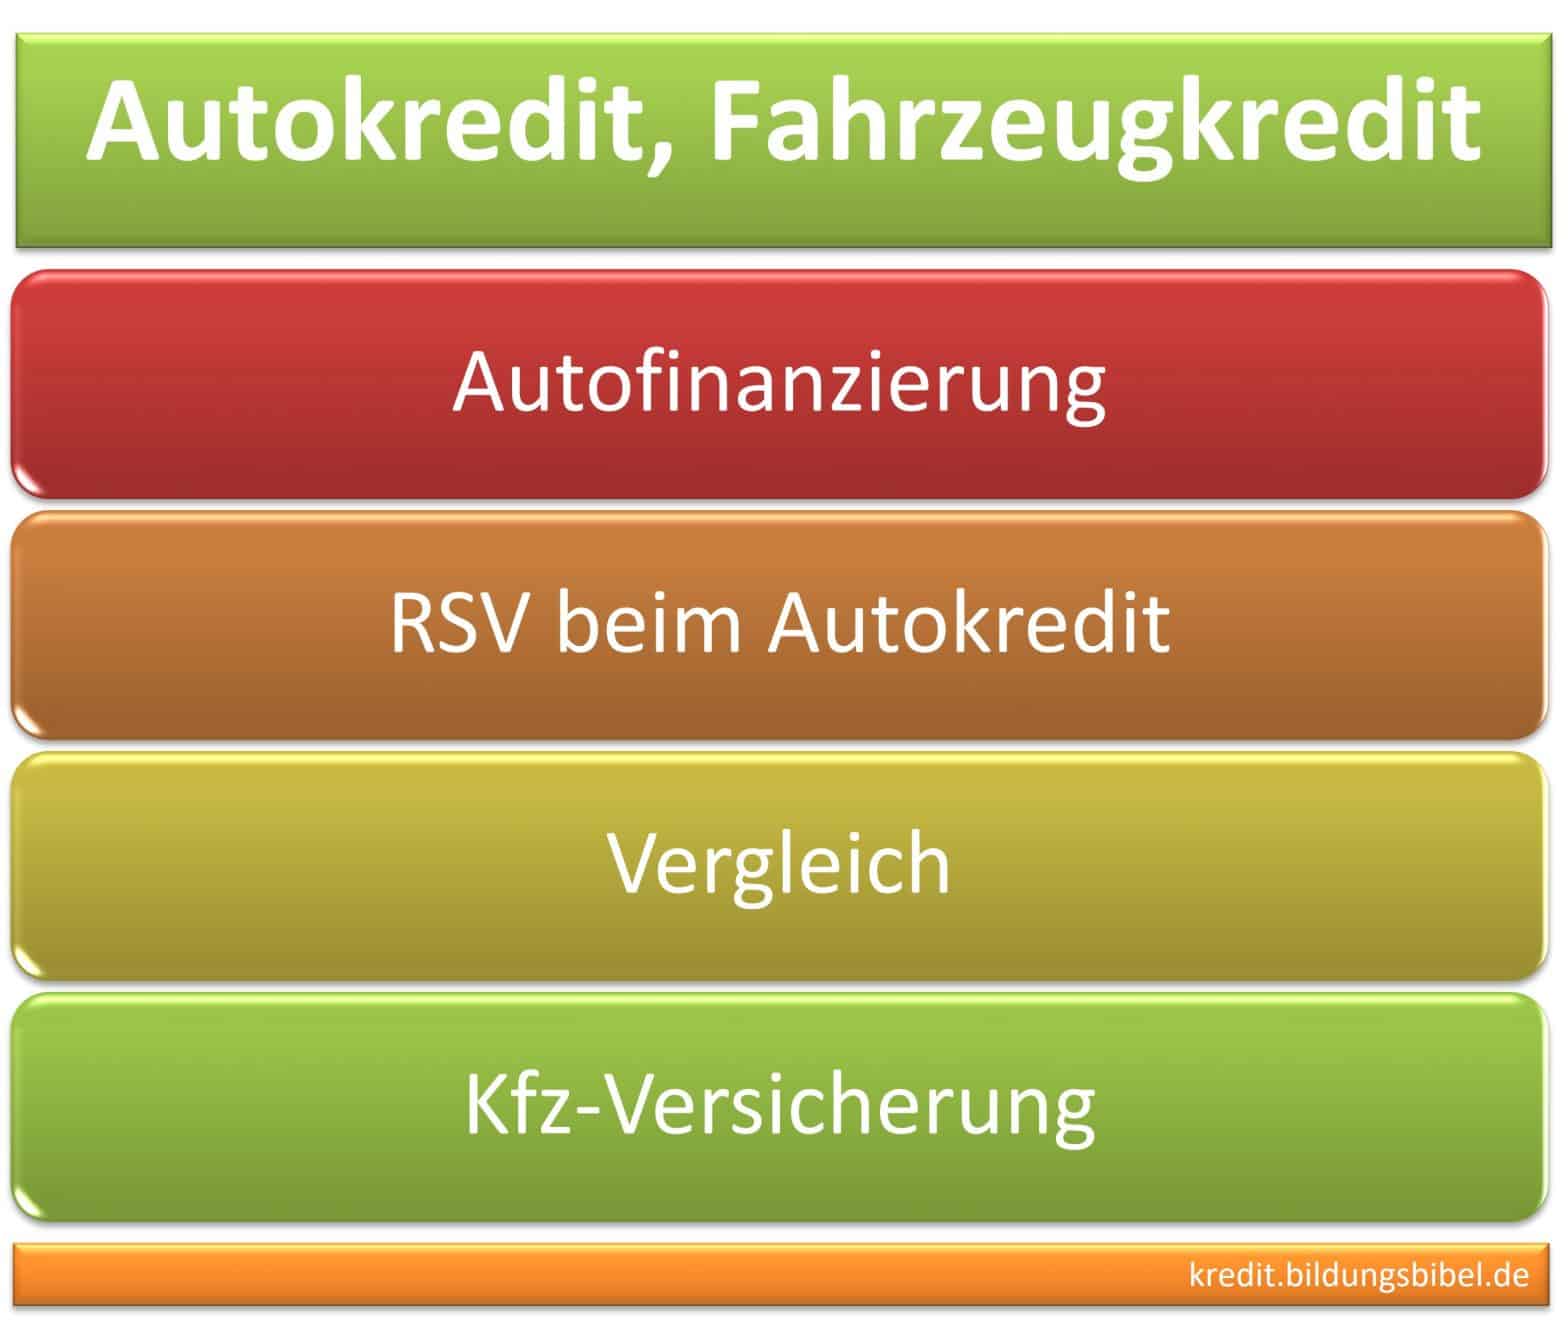 Autokredit oder Fahrzeugkredit, Weg zur Autofinanzierung mit / ohne RSV bzw. Restschuldversicherung, Info zum Vergleich und KFZ Versicherung.